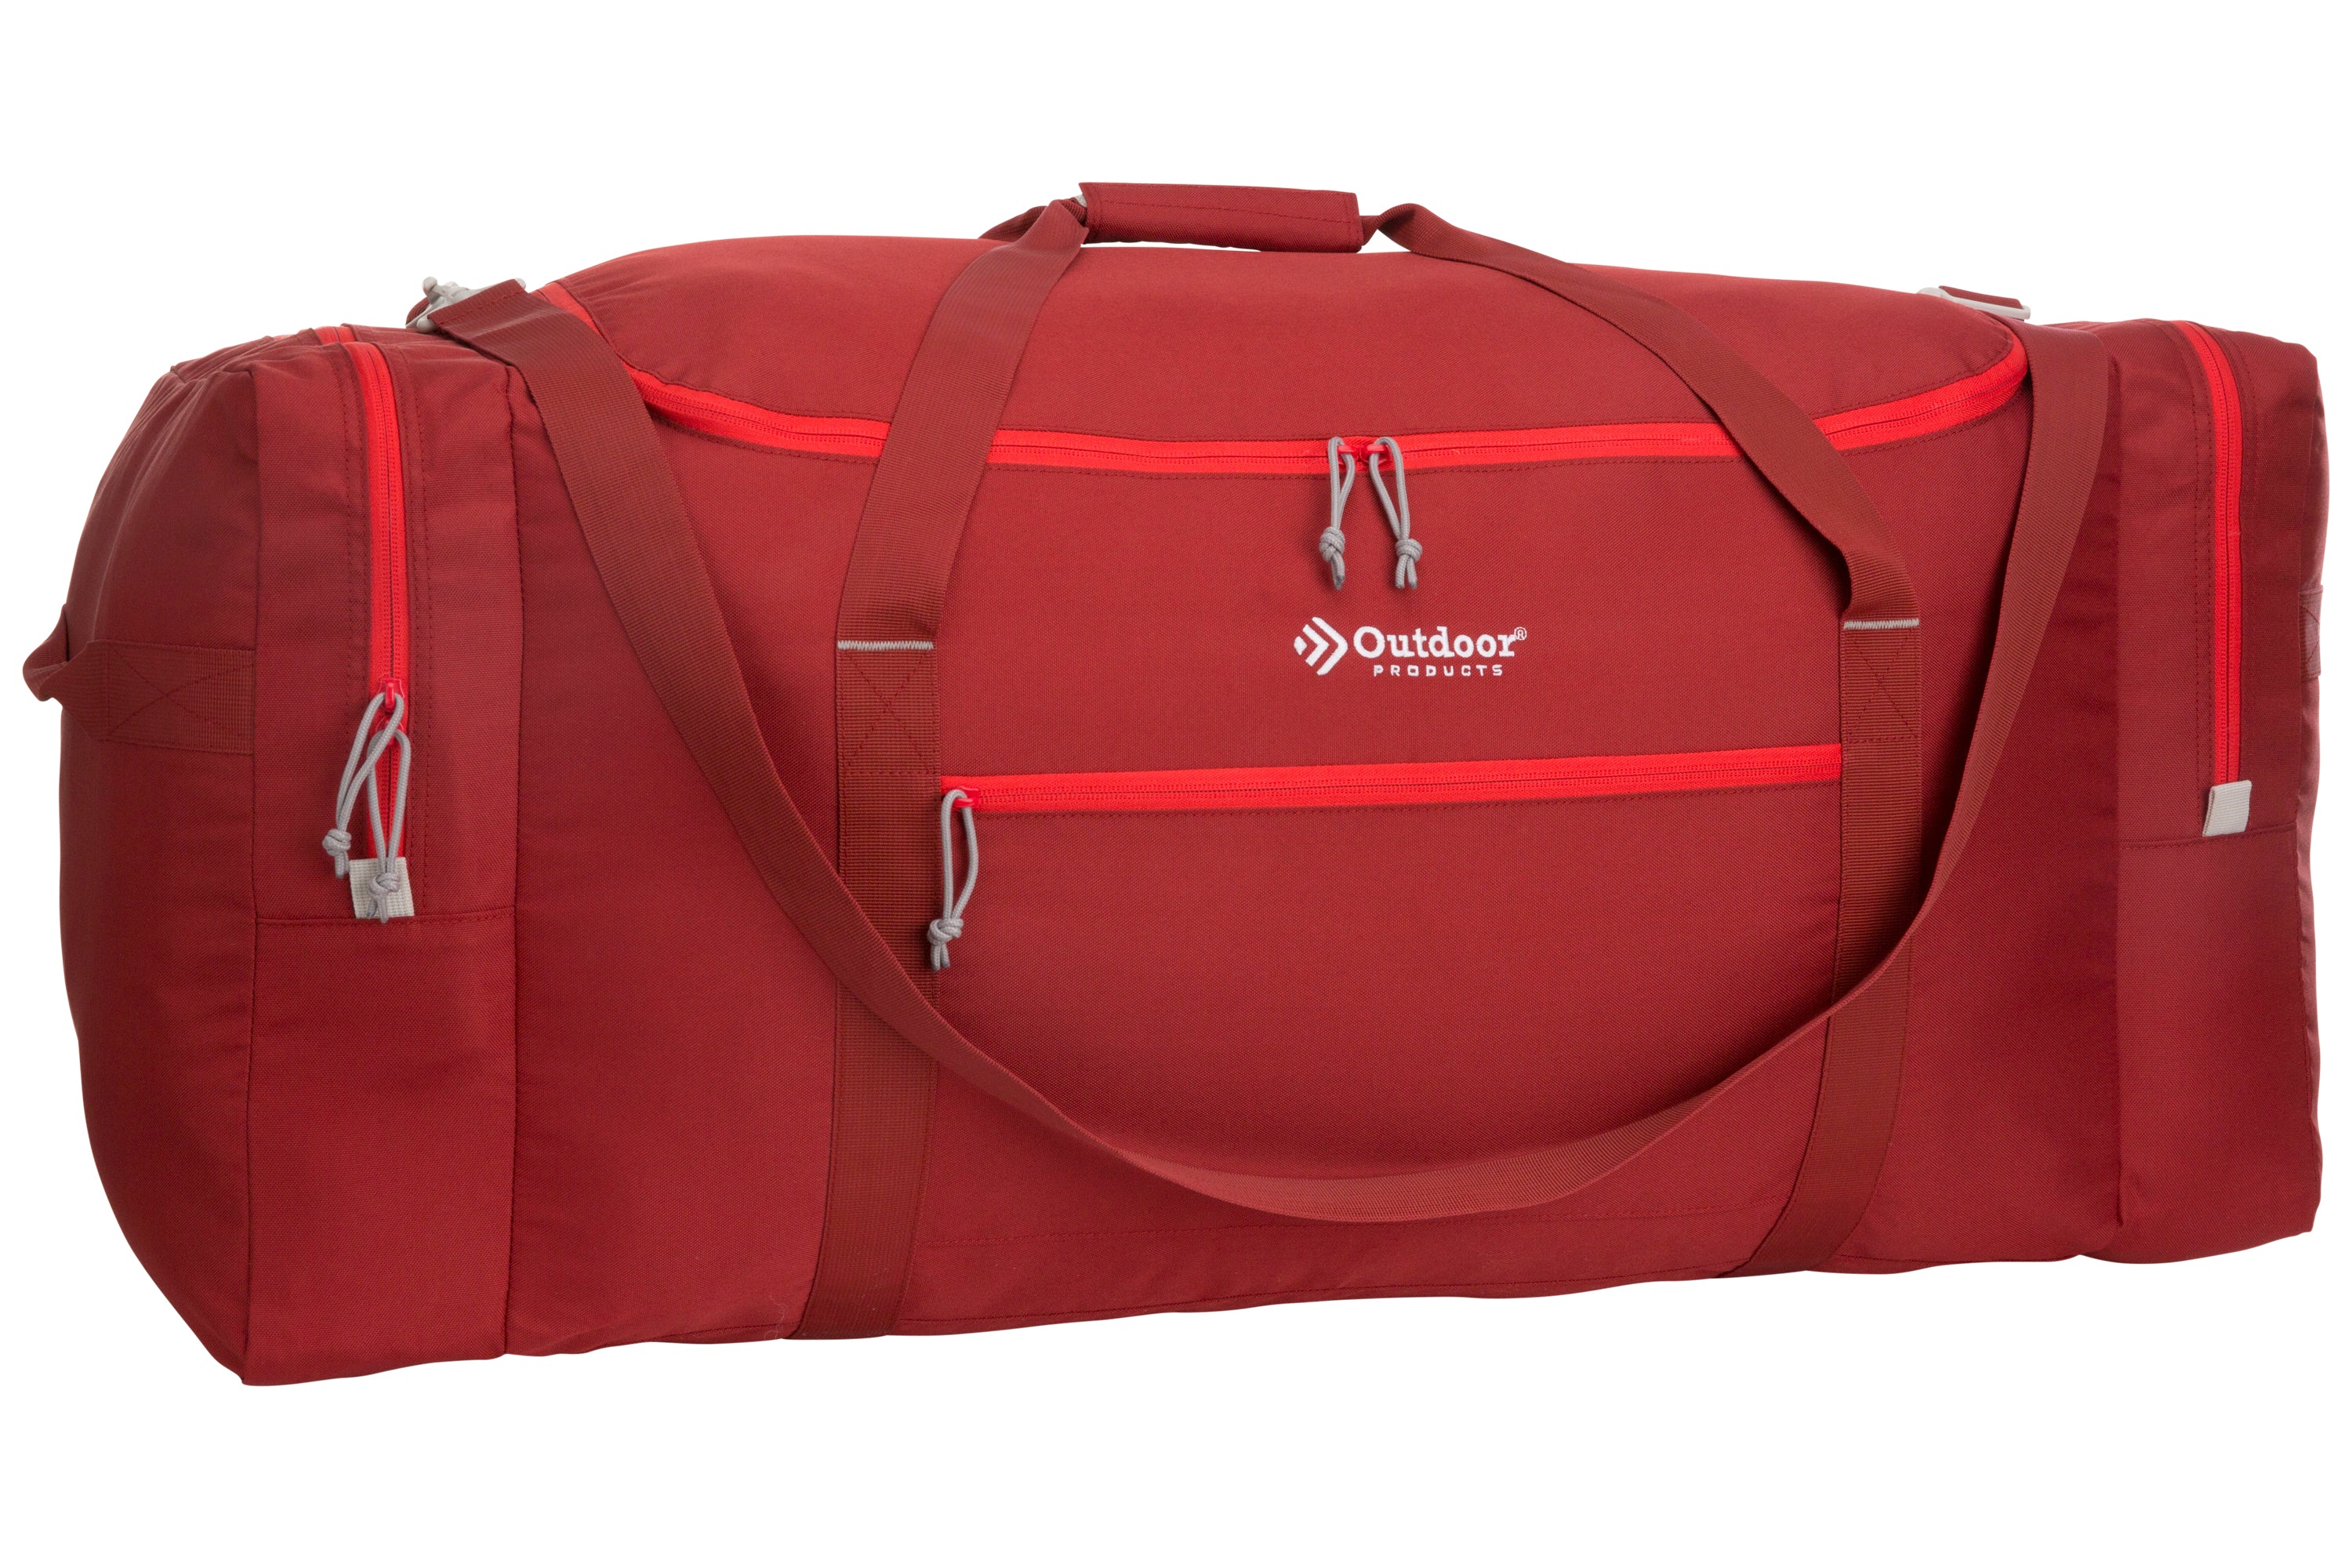 Shop WANDF WF305 Duffle Bag Luggage Duffel Lightweight Sale 32 Inches